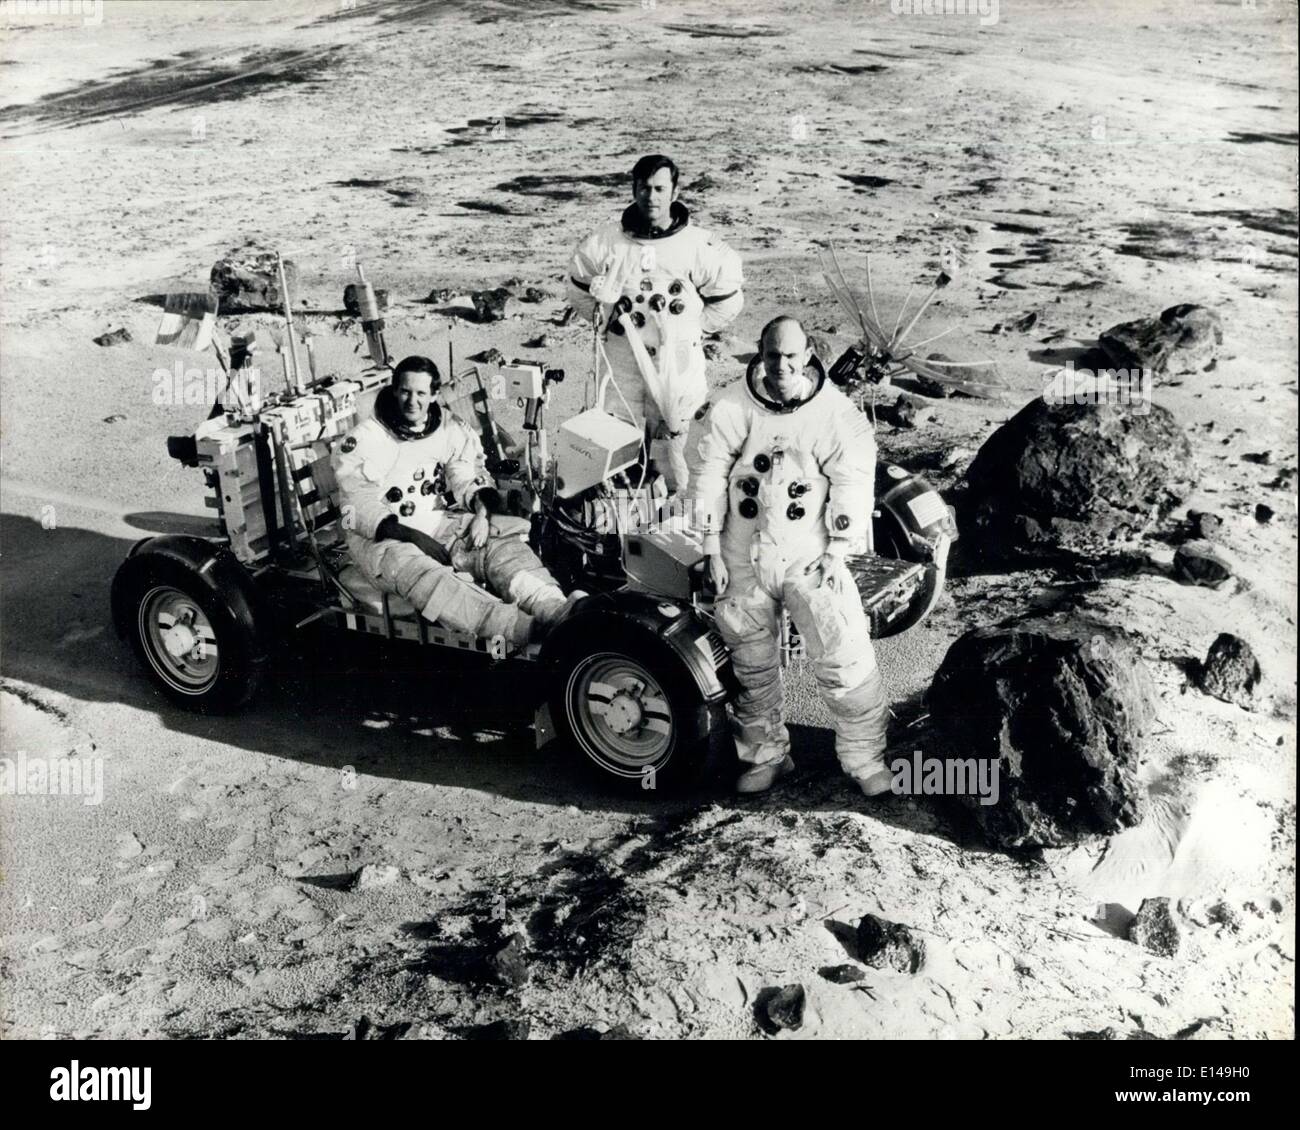 Le 17 avril 2012 - Les astronautes d'Apollo 16 : (de gauche à droite) Les astronautes d'Apollo 16, pilote du module lunaire Charles M. Duc ; commandant John w les jeunes ; et pilote du module de commande Thomas K Mattingly, lors d'un exercice d'entraînement en prévision de la Mission d'atterrissage lunaire. Banque D'Images